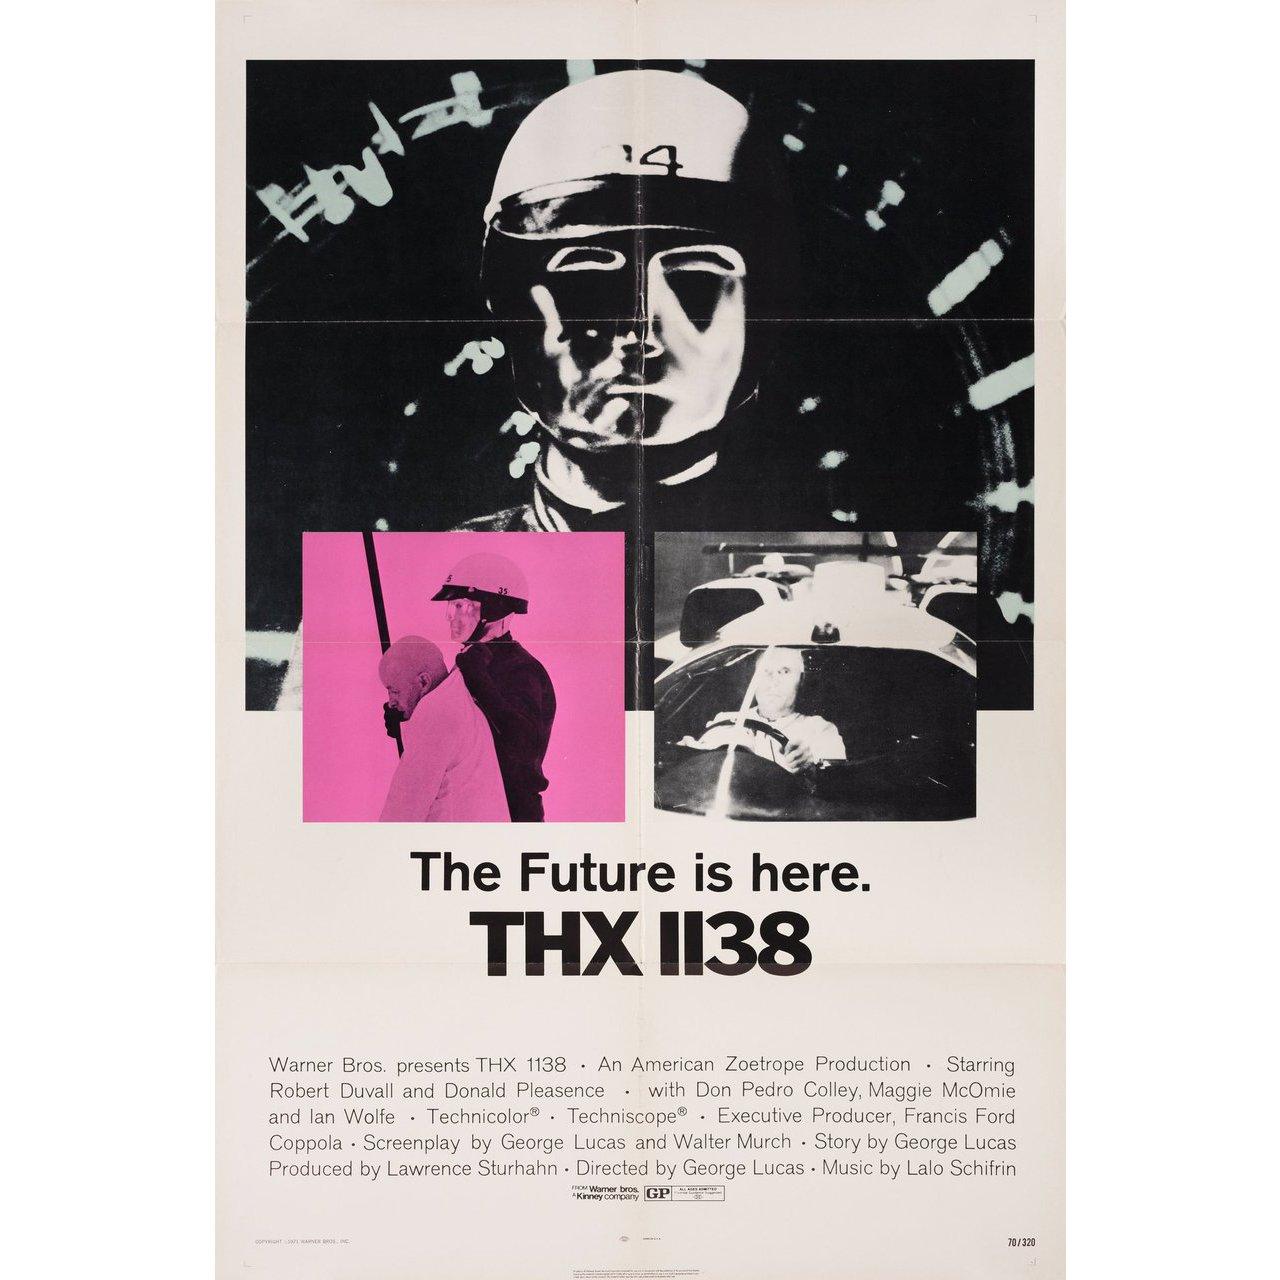 Original 1971 U.S. Plakat für den Film THX 1138 von George Lucas mit Robert Duvall / Donald Pleasence / Don Pedro Colley / Maggie McOmie. Sehr guter Zustand, gefaltet. Viele Originalplakate wurden gefaltet ausgegeben oder nachträglich gefaltet.